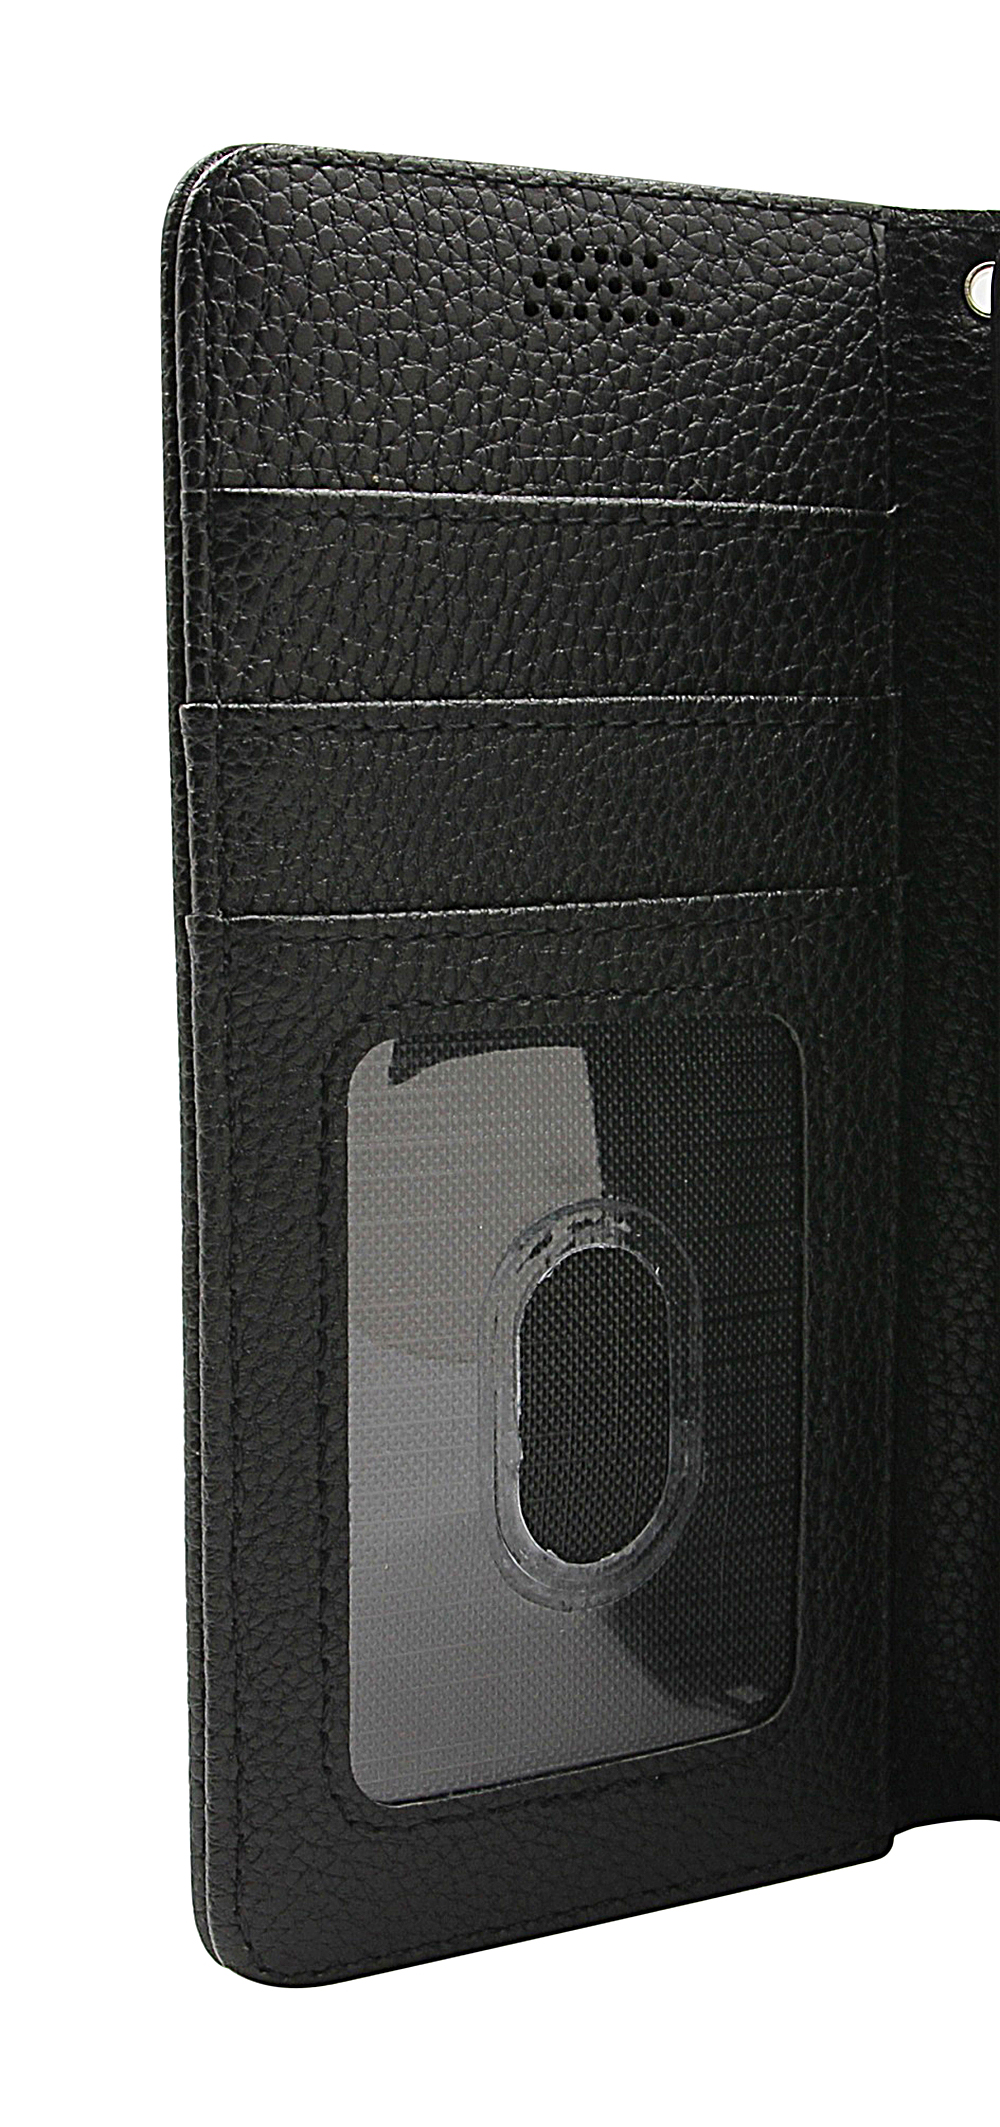 billigamobilskydd.seNew Standcase Wallet ZTE Axon 30 Ultra 5G